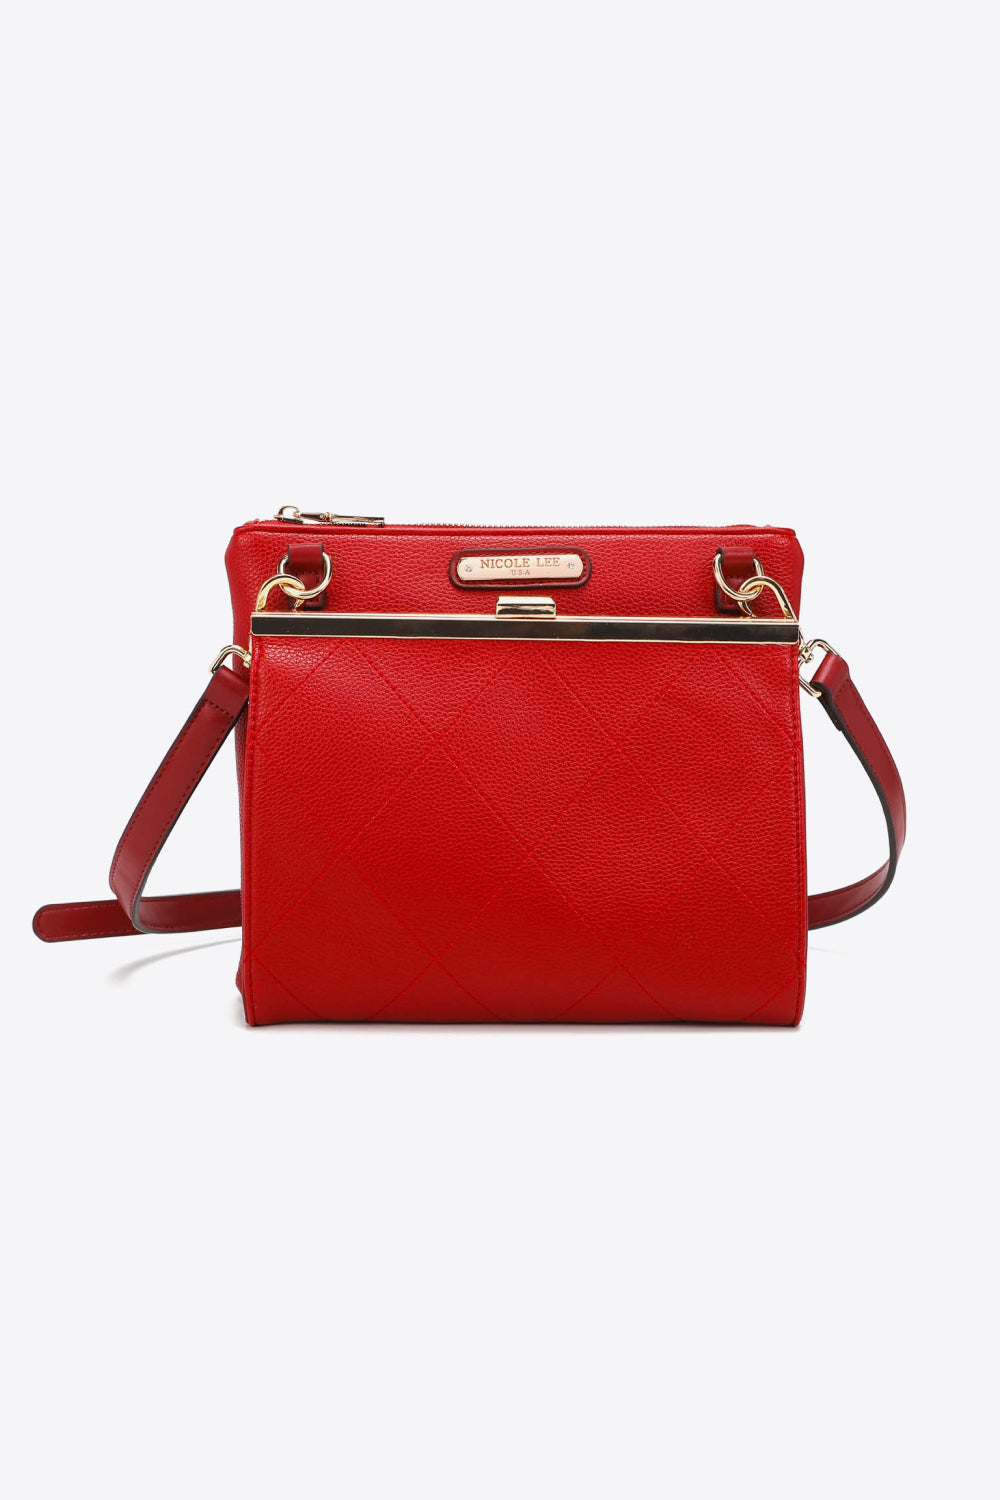 Nicole Lee USA All Day, Everyday Handbag - Tigbul's Fashion